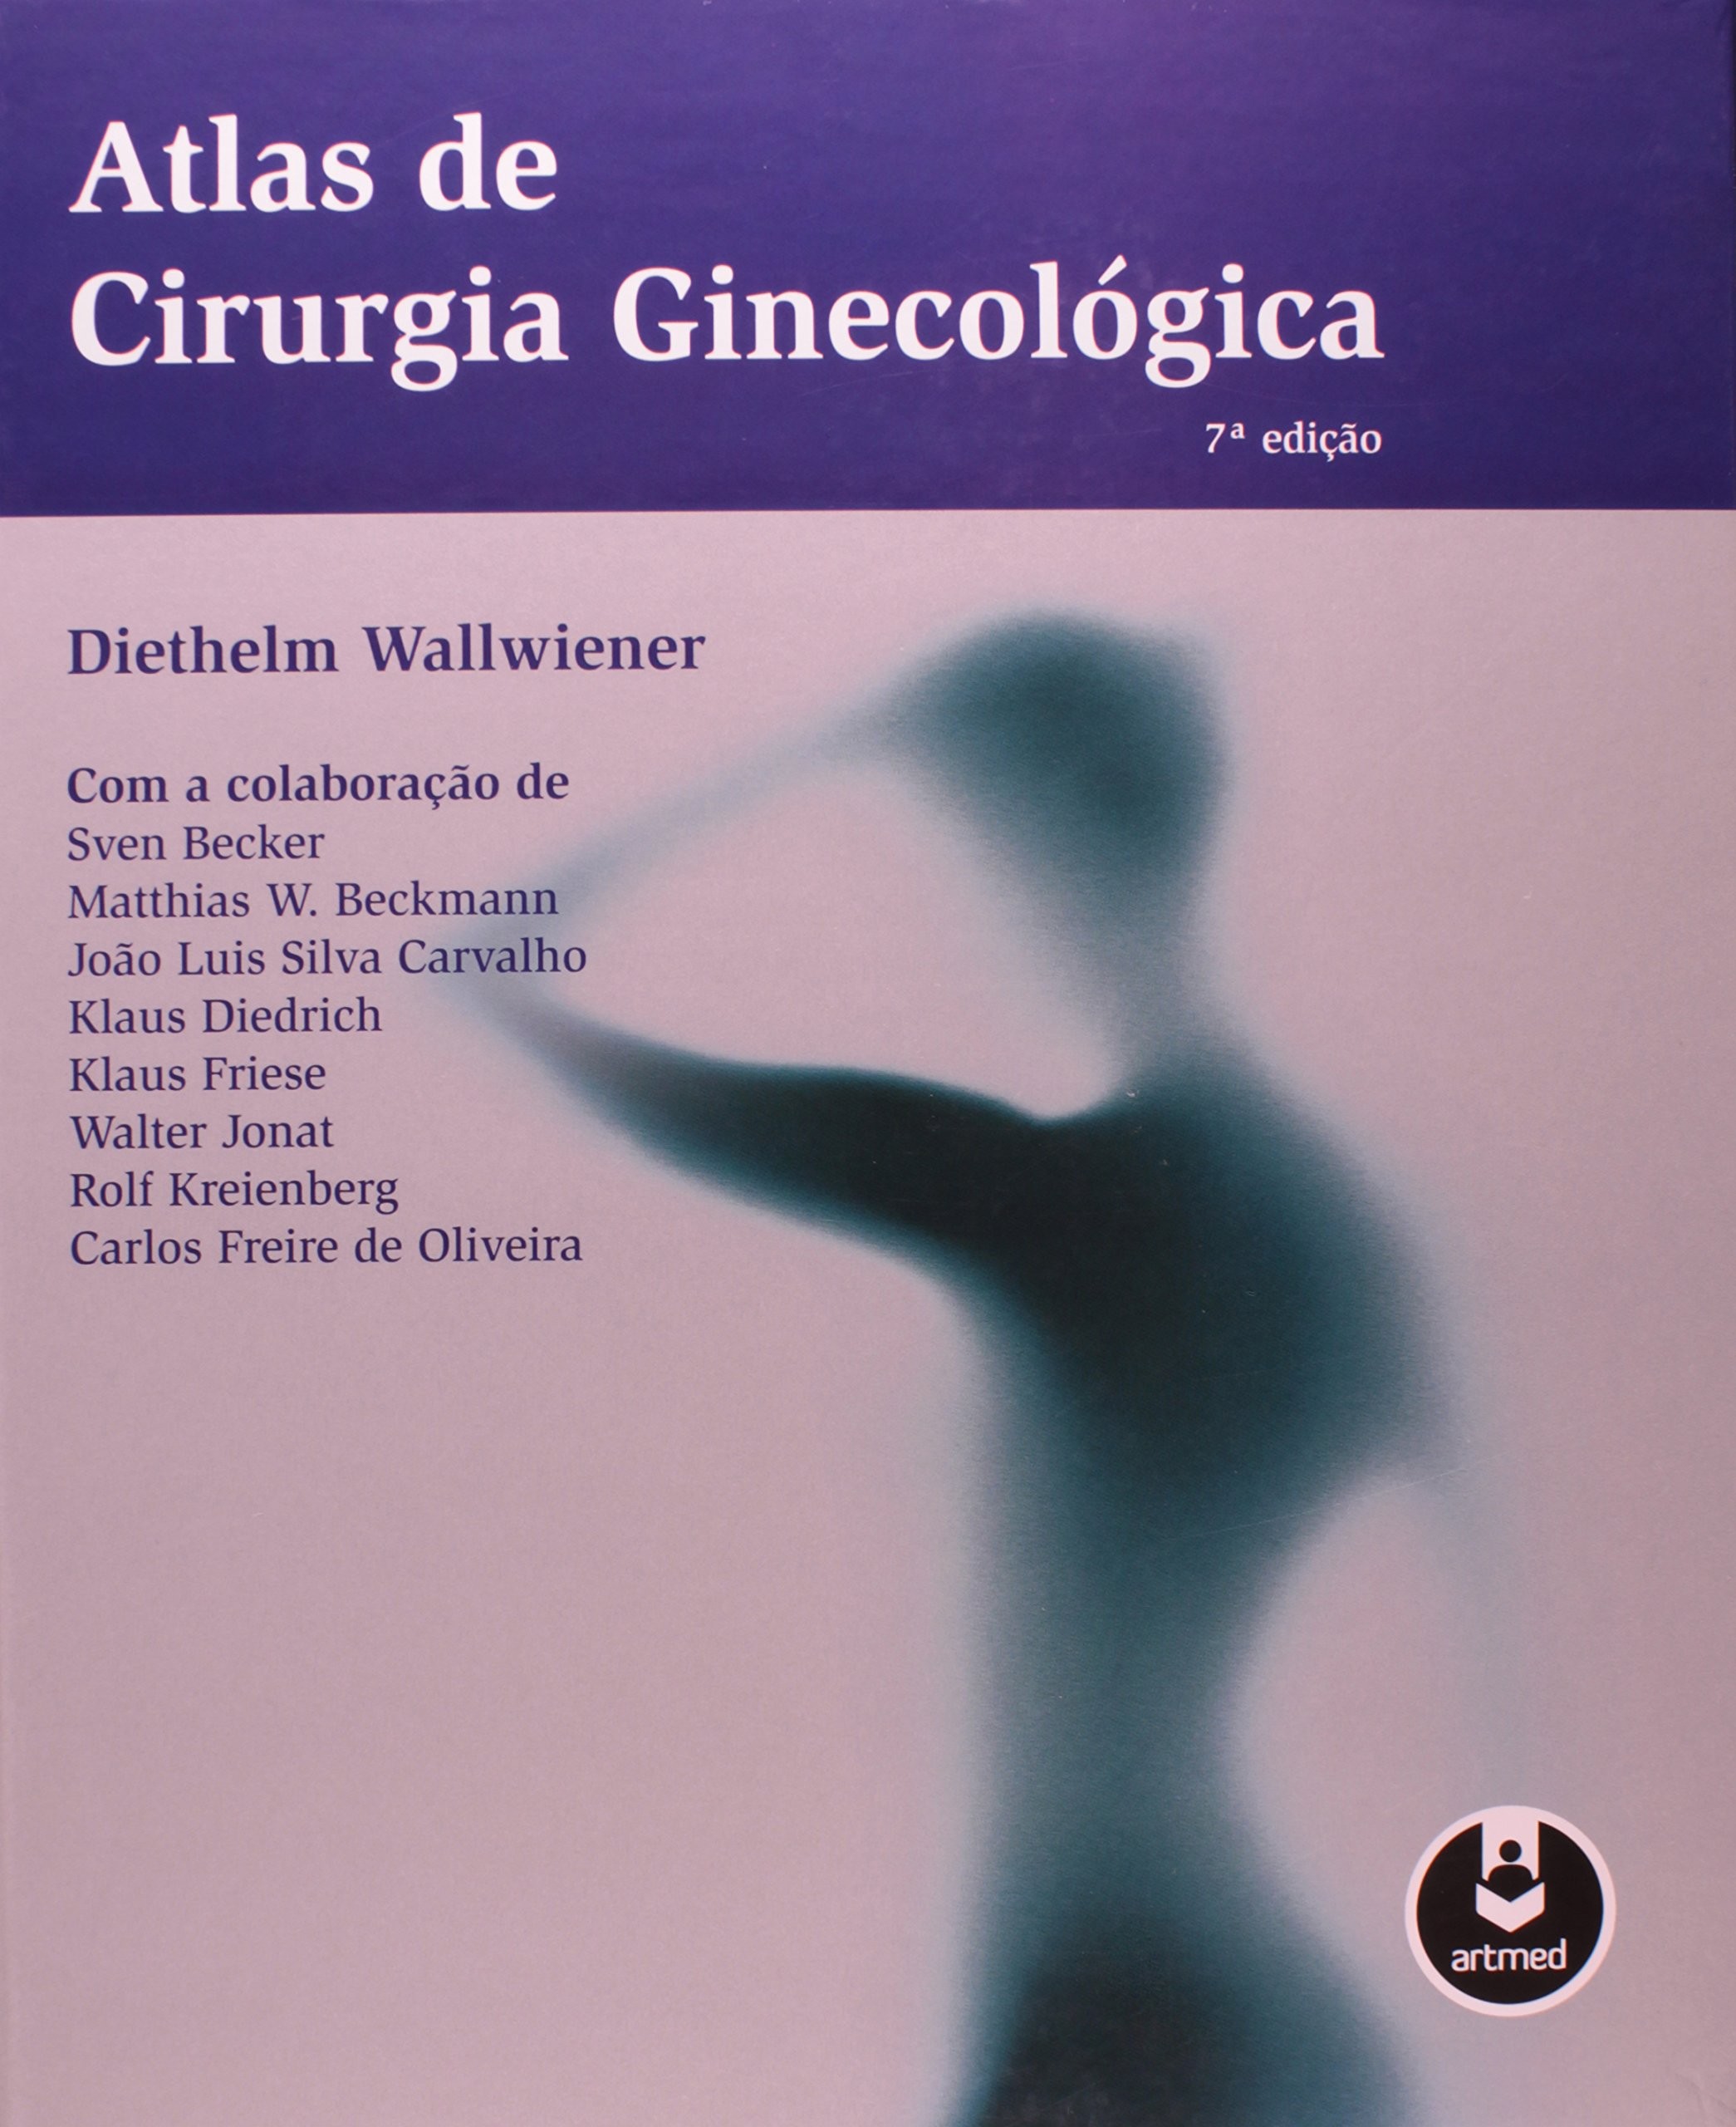 Atlas de Cirurgia Ginecológica